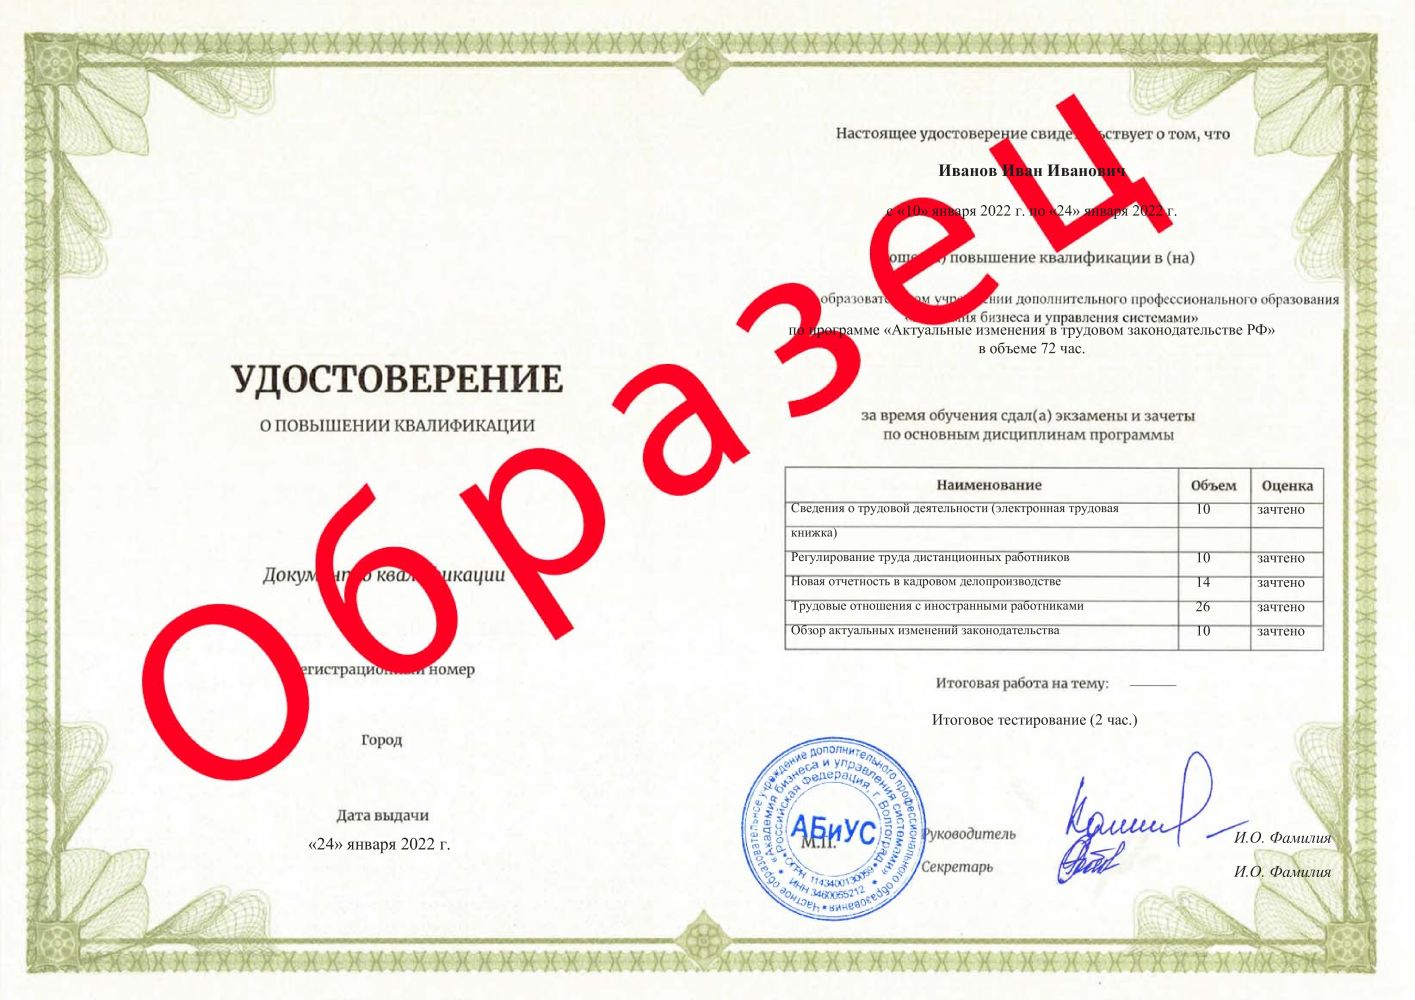 Удостоверение Актуальные изменения в трудовом законодательстве РФ 72 часа 5667 руб.